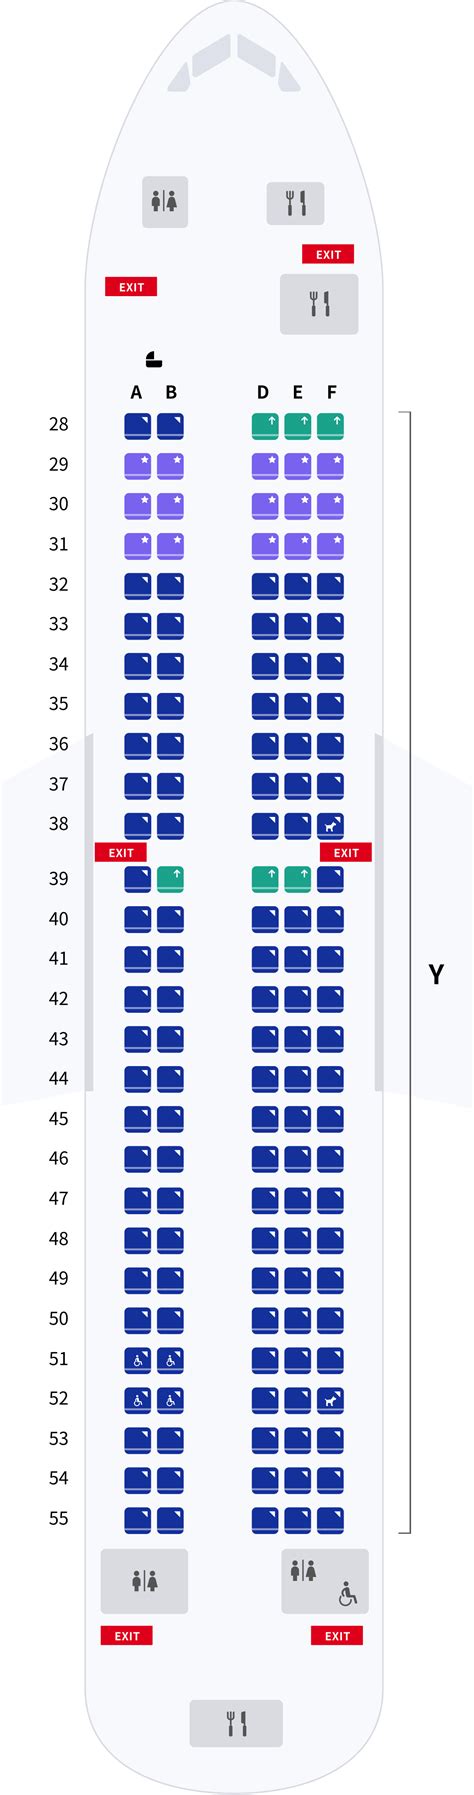 Air Asia Flight Seating Plan